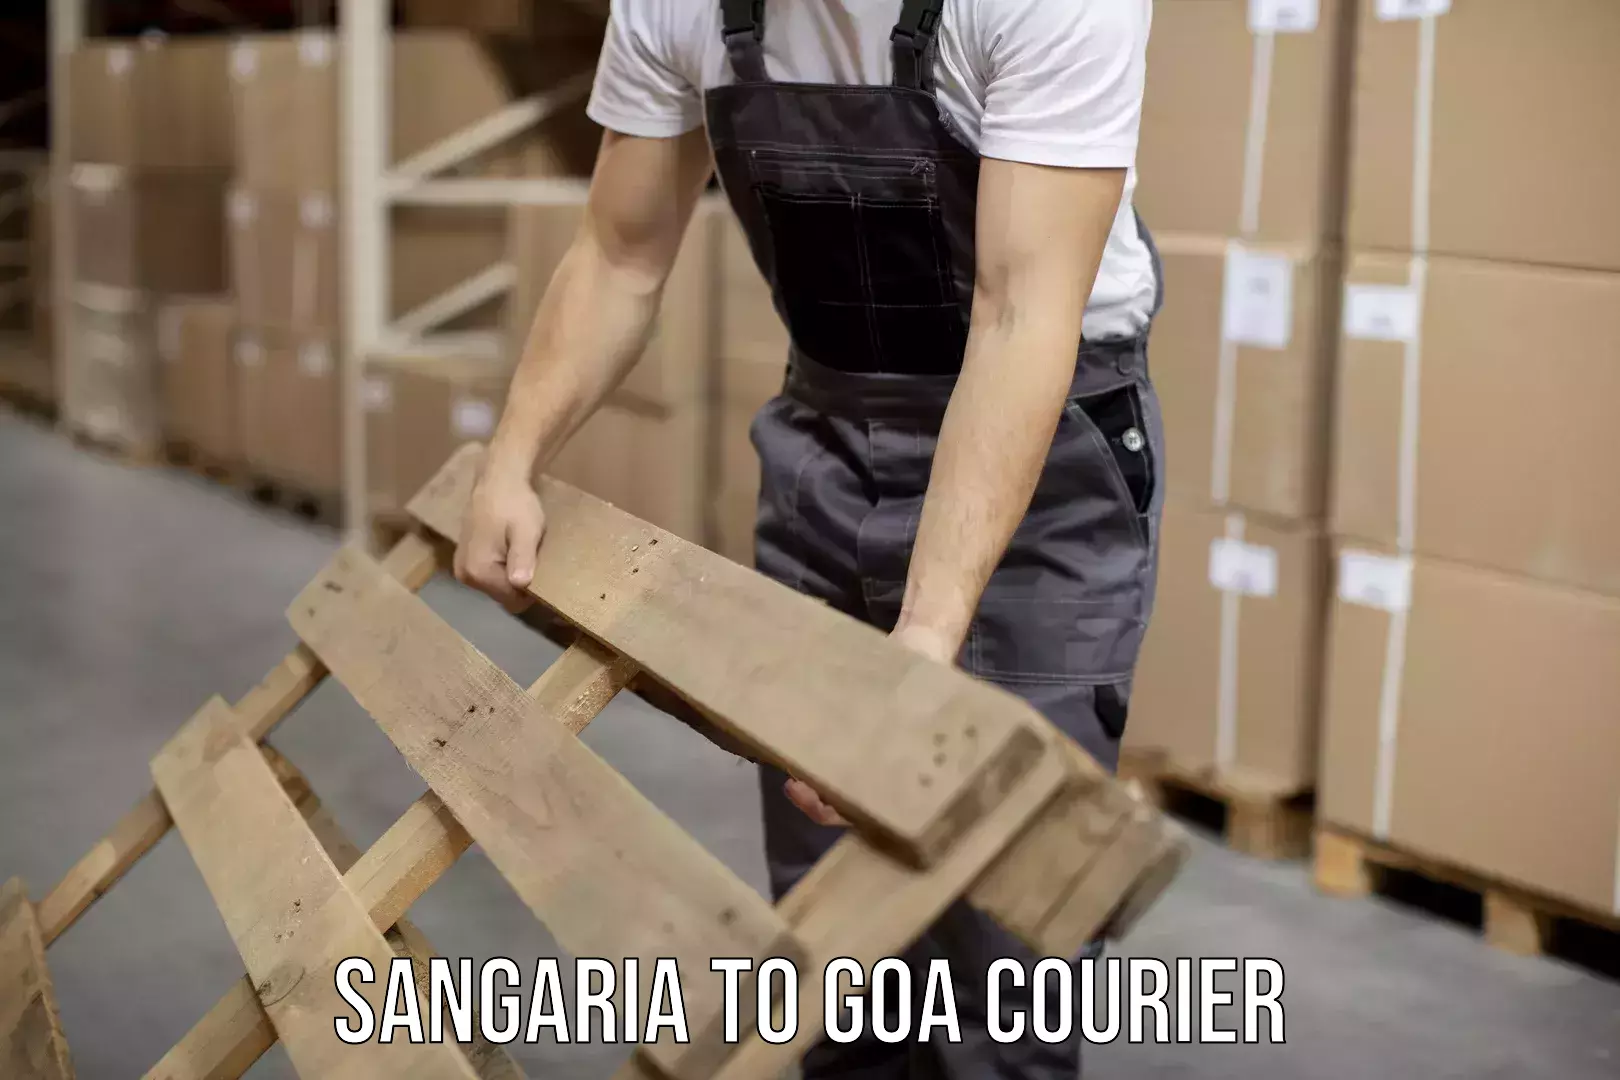 Premium courier solutions Sangaria to Vasco da Gama